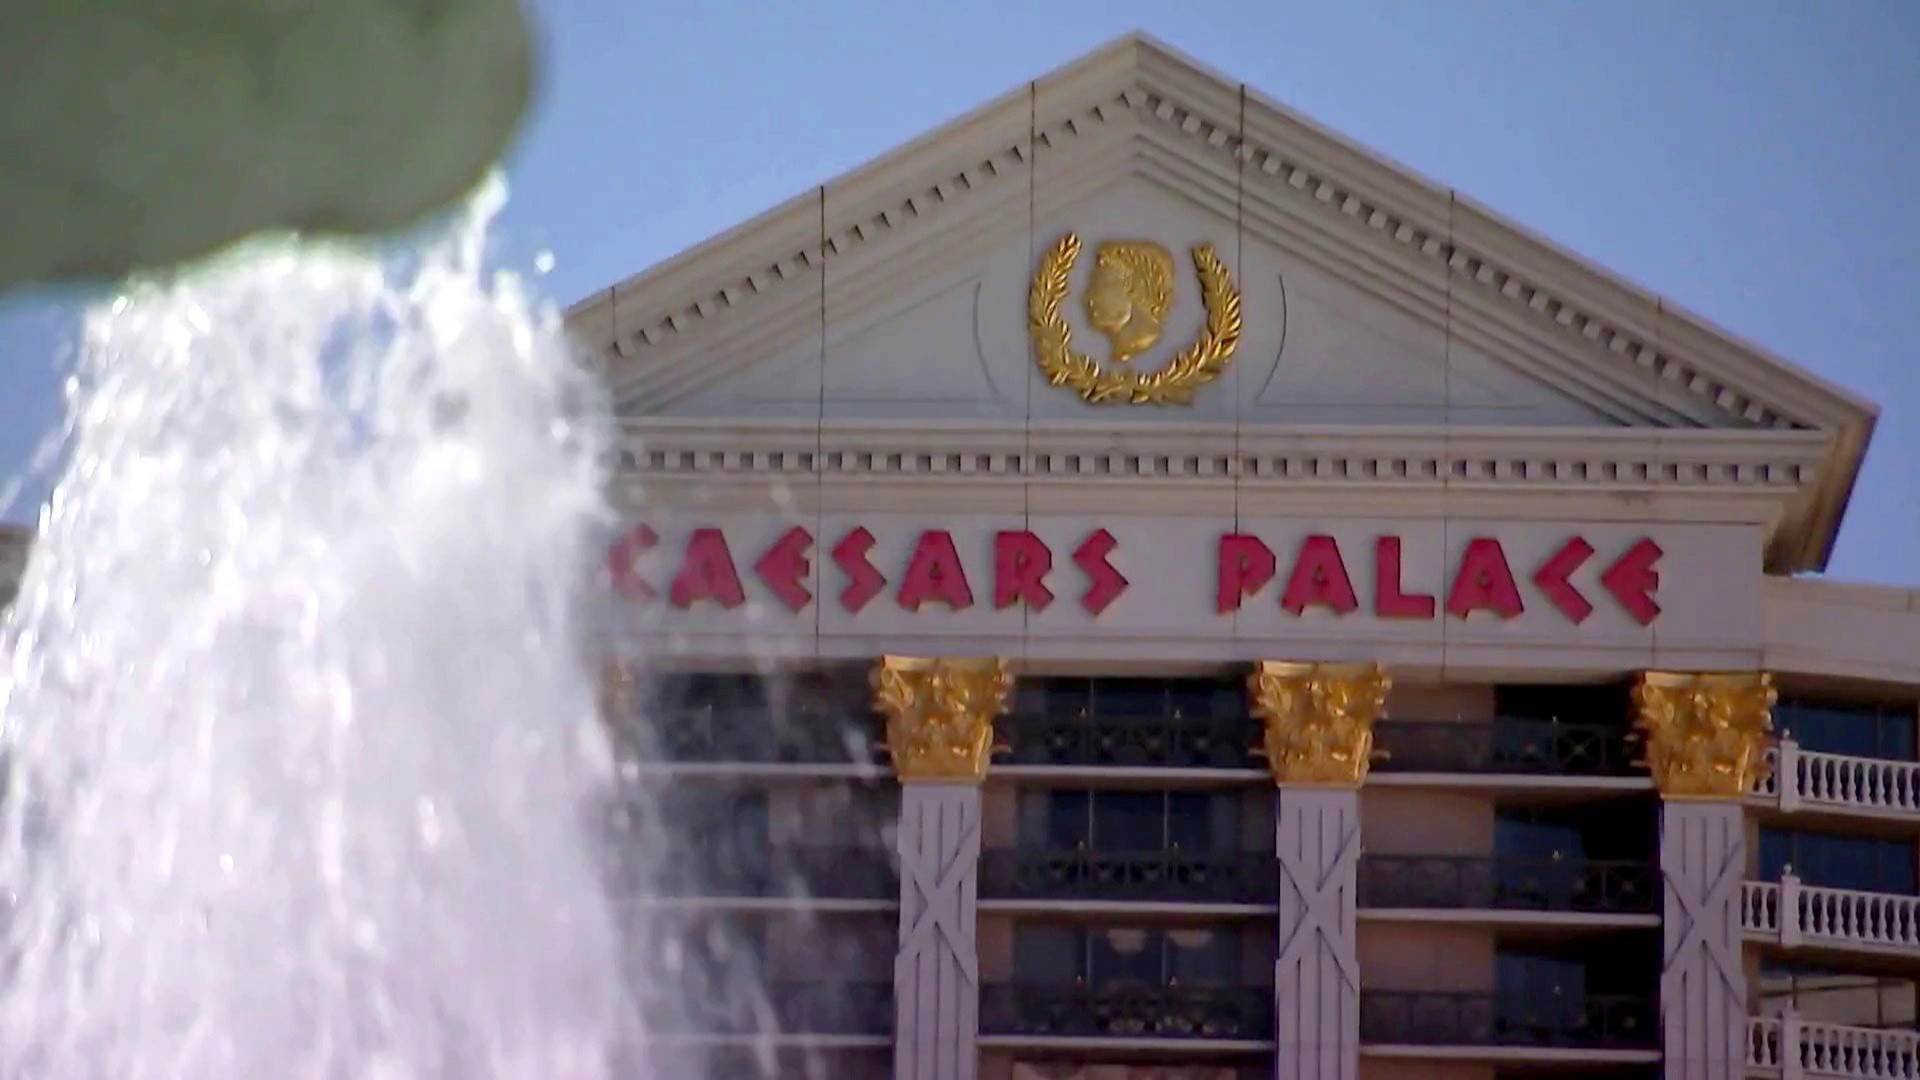 Caesars Palace News